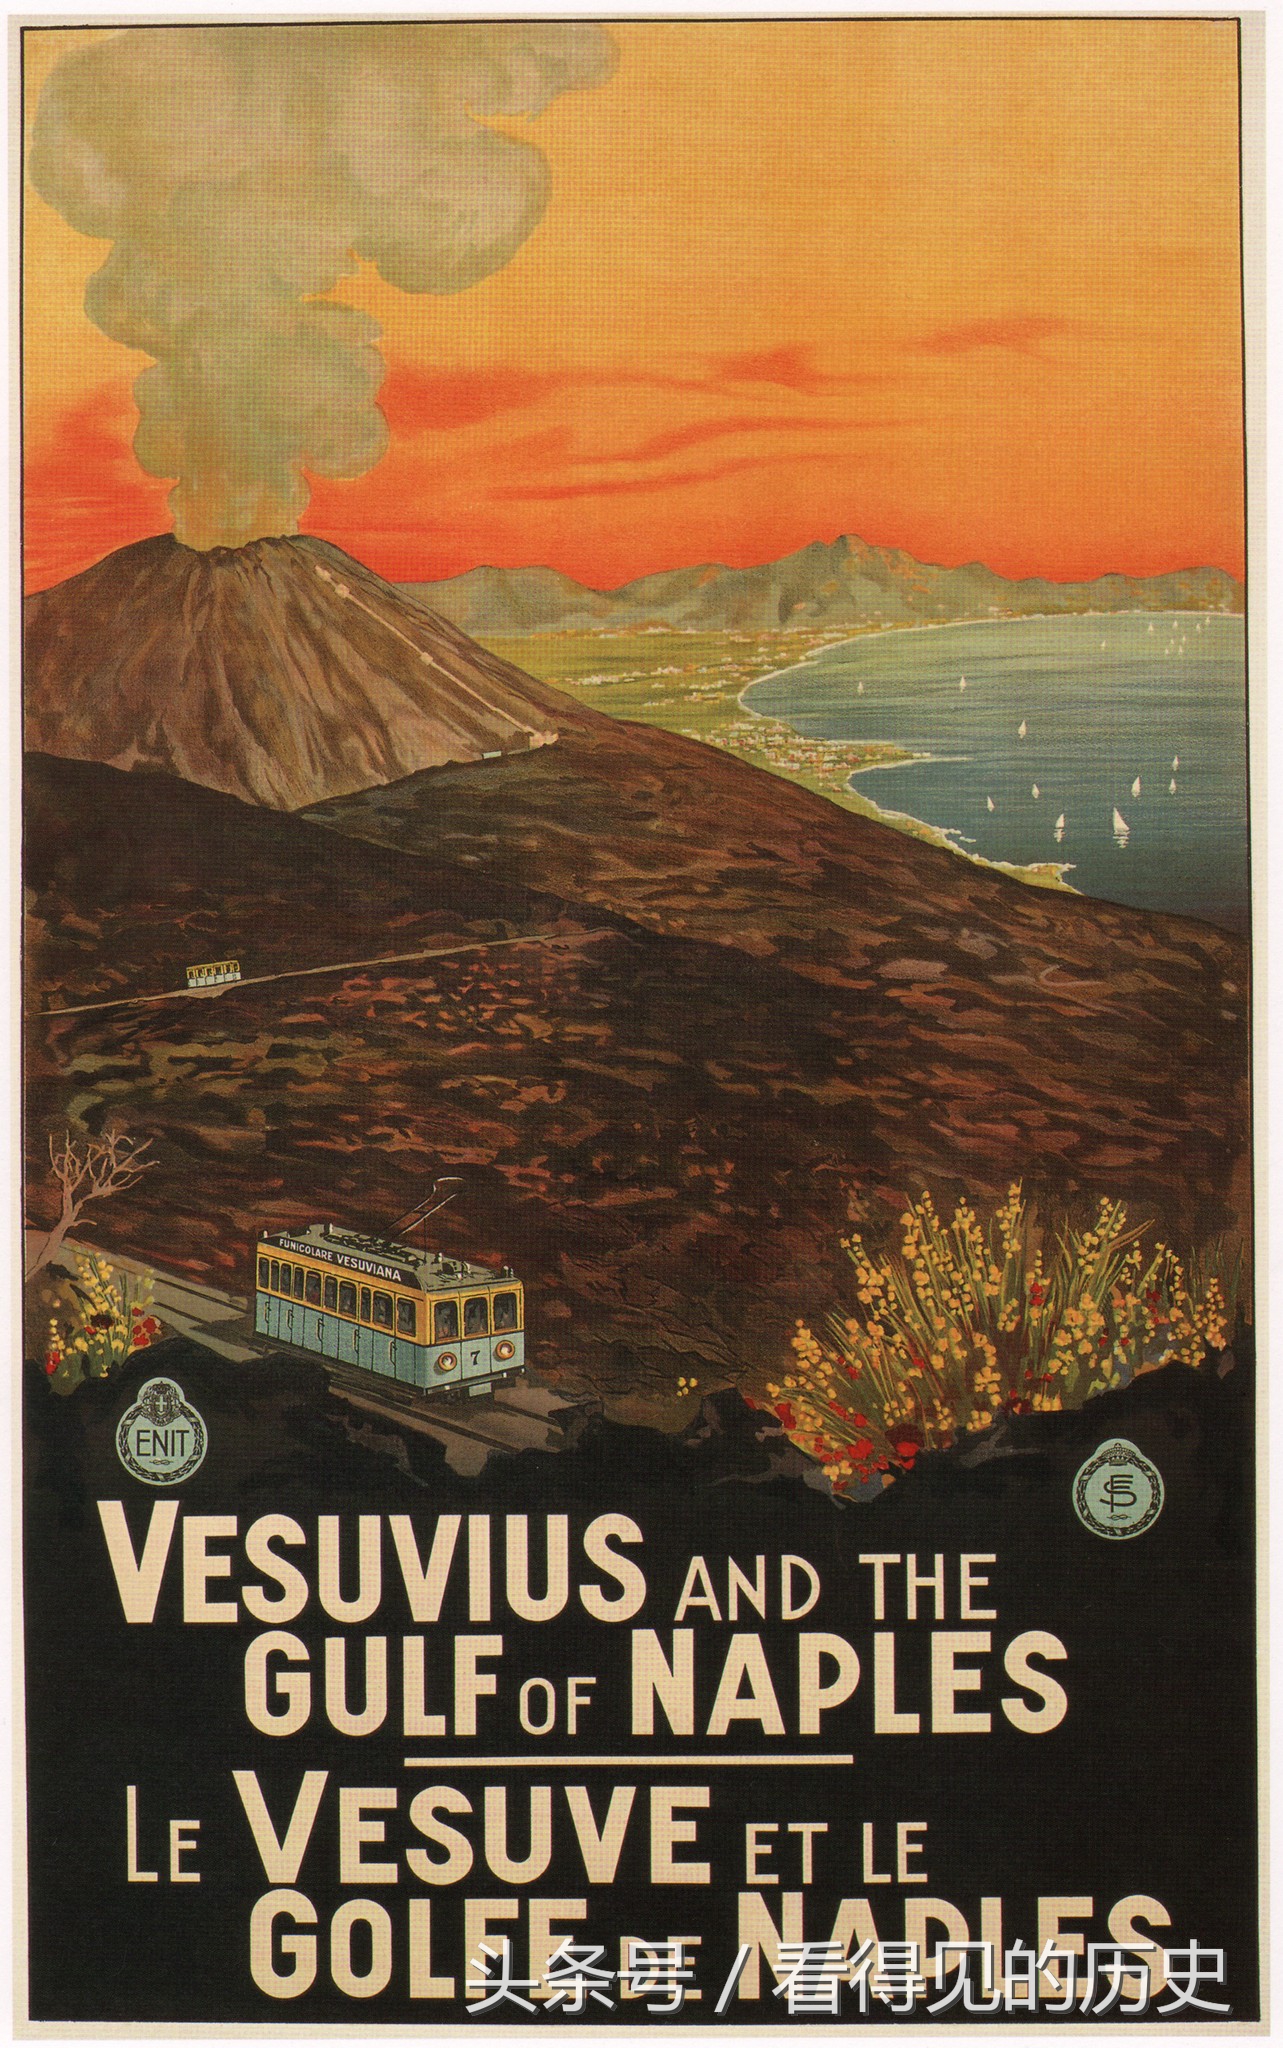 睁眼看世界：这些漂亮的意大利旅游海报，都快100年了